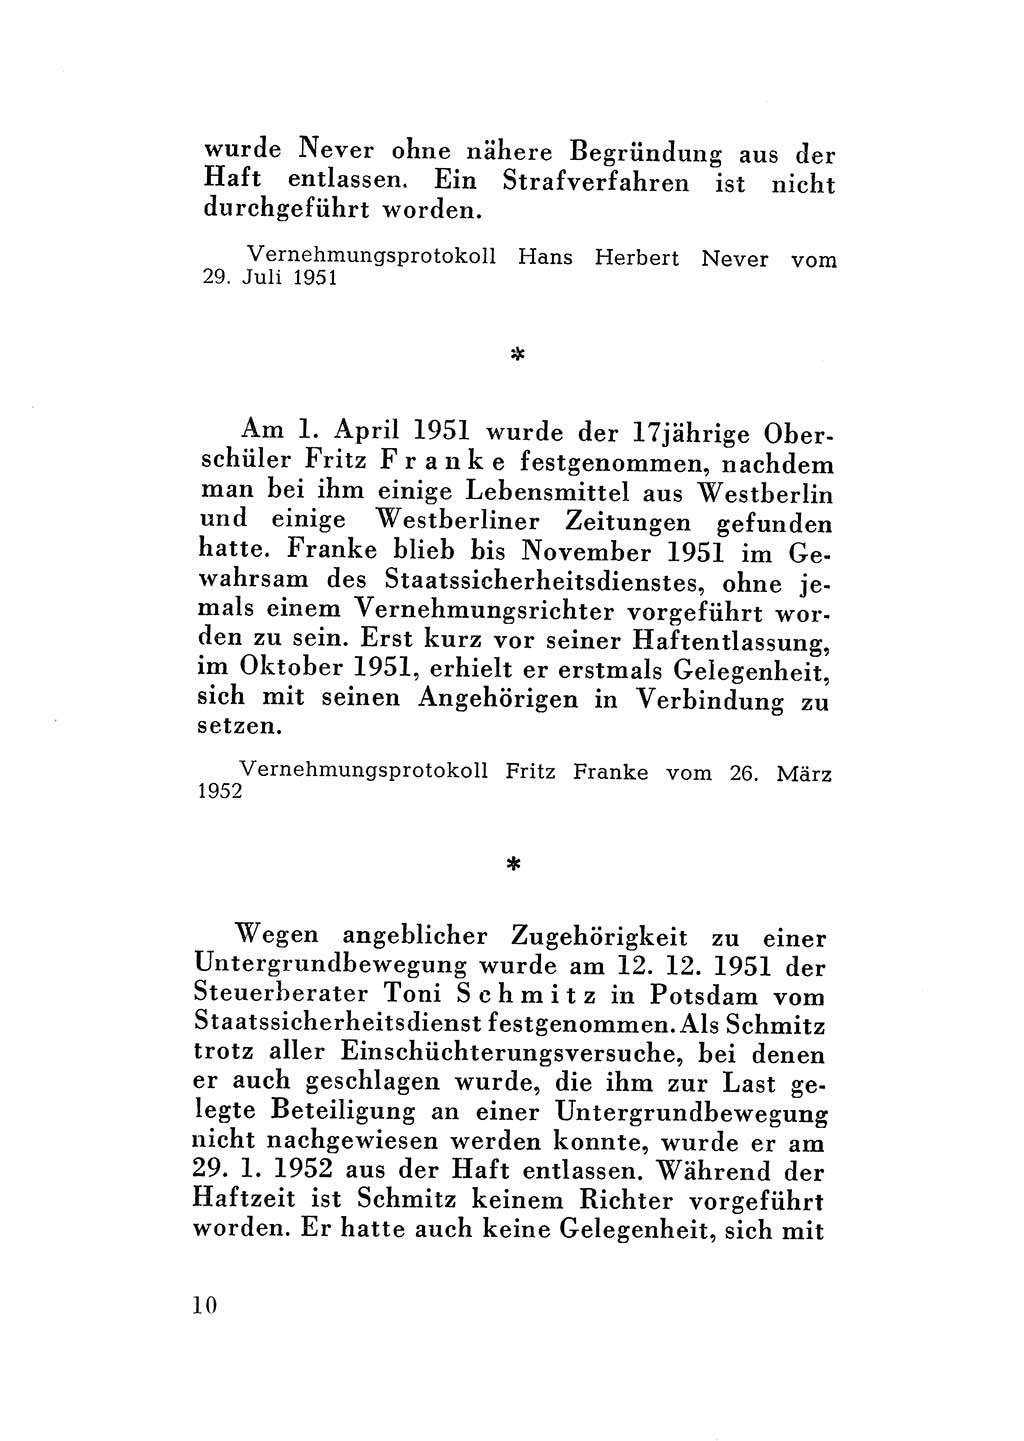 Katalog des Unrechts, Untersuchungsausschuß Freiheitlicher Juristen (UfJ) [Bundesrepublik Deutschland (BRD)] 1956, Seite 10 (Kat. UnR. UfJ BRD 1956, S. 10)